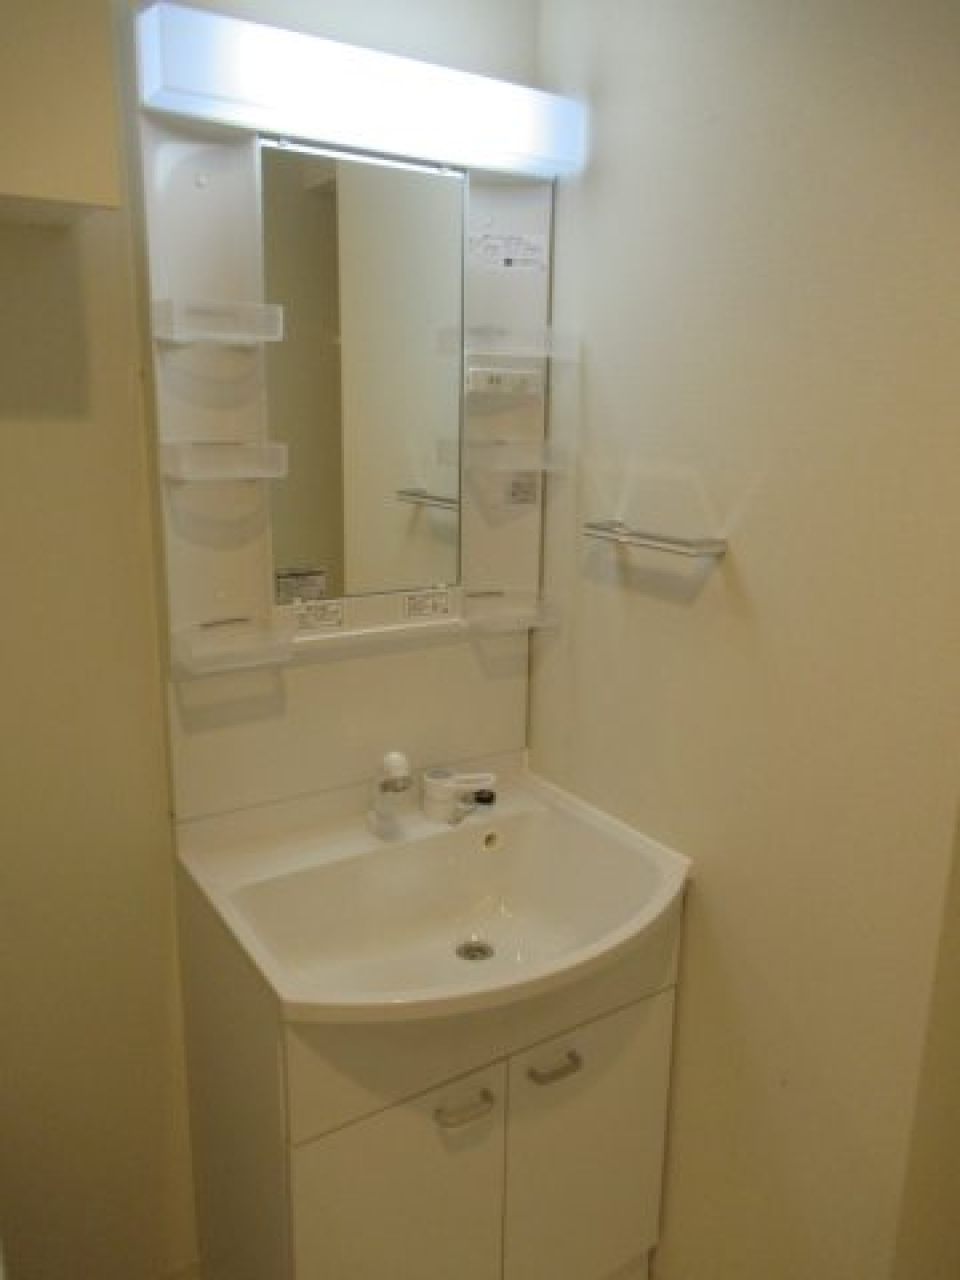 トイレと洗面台は同じ空間に設置されています。